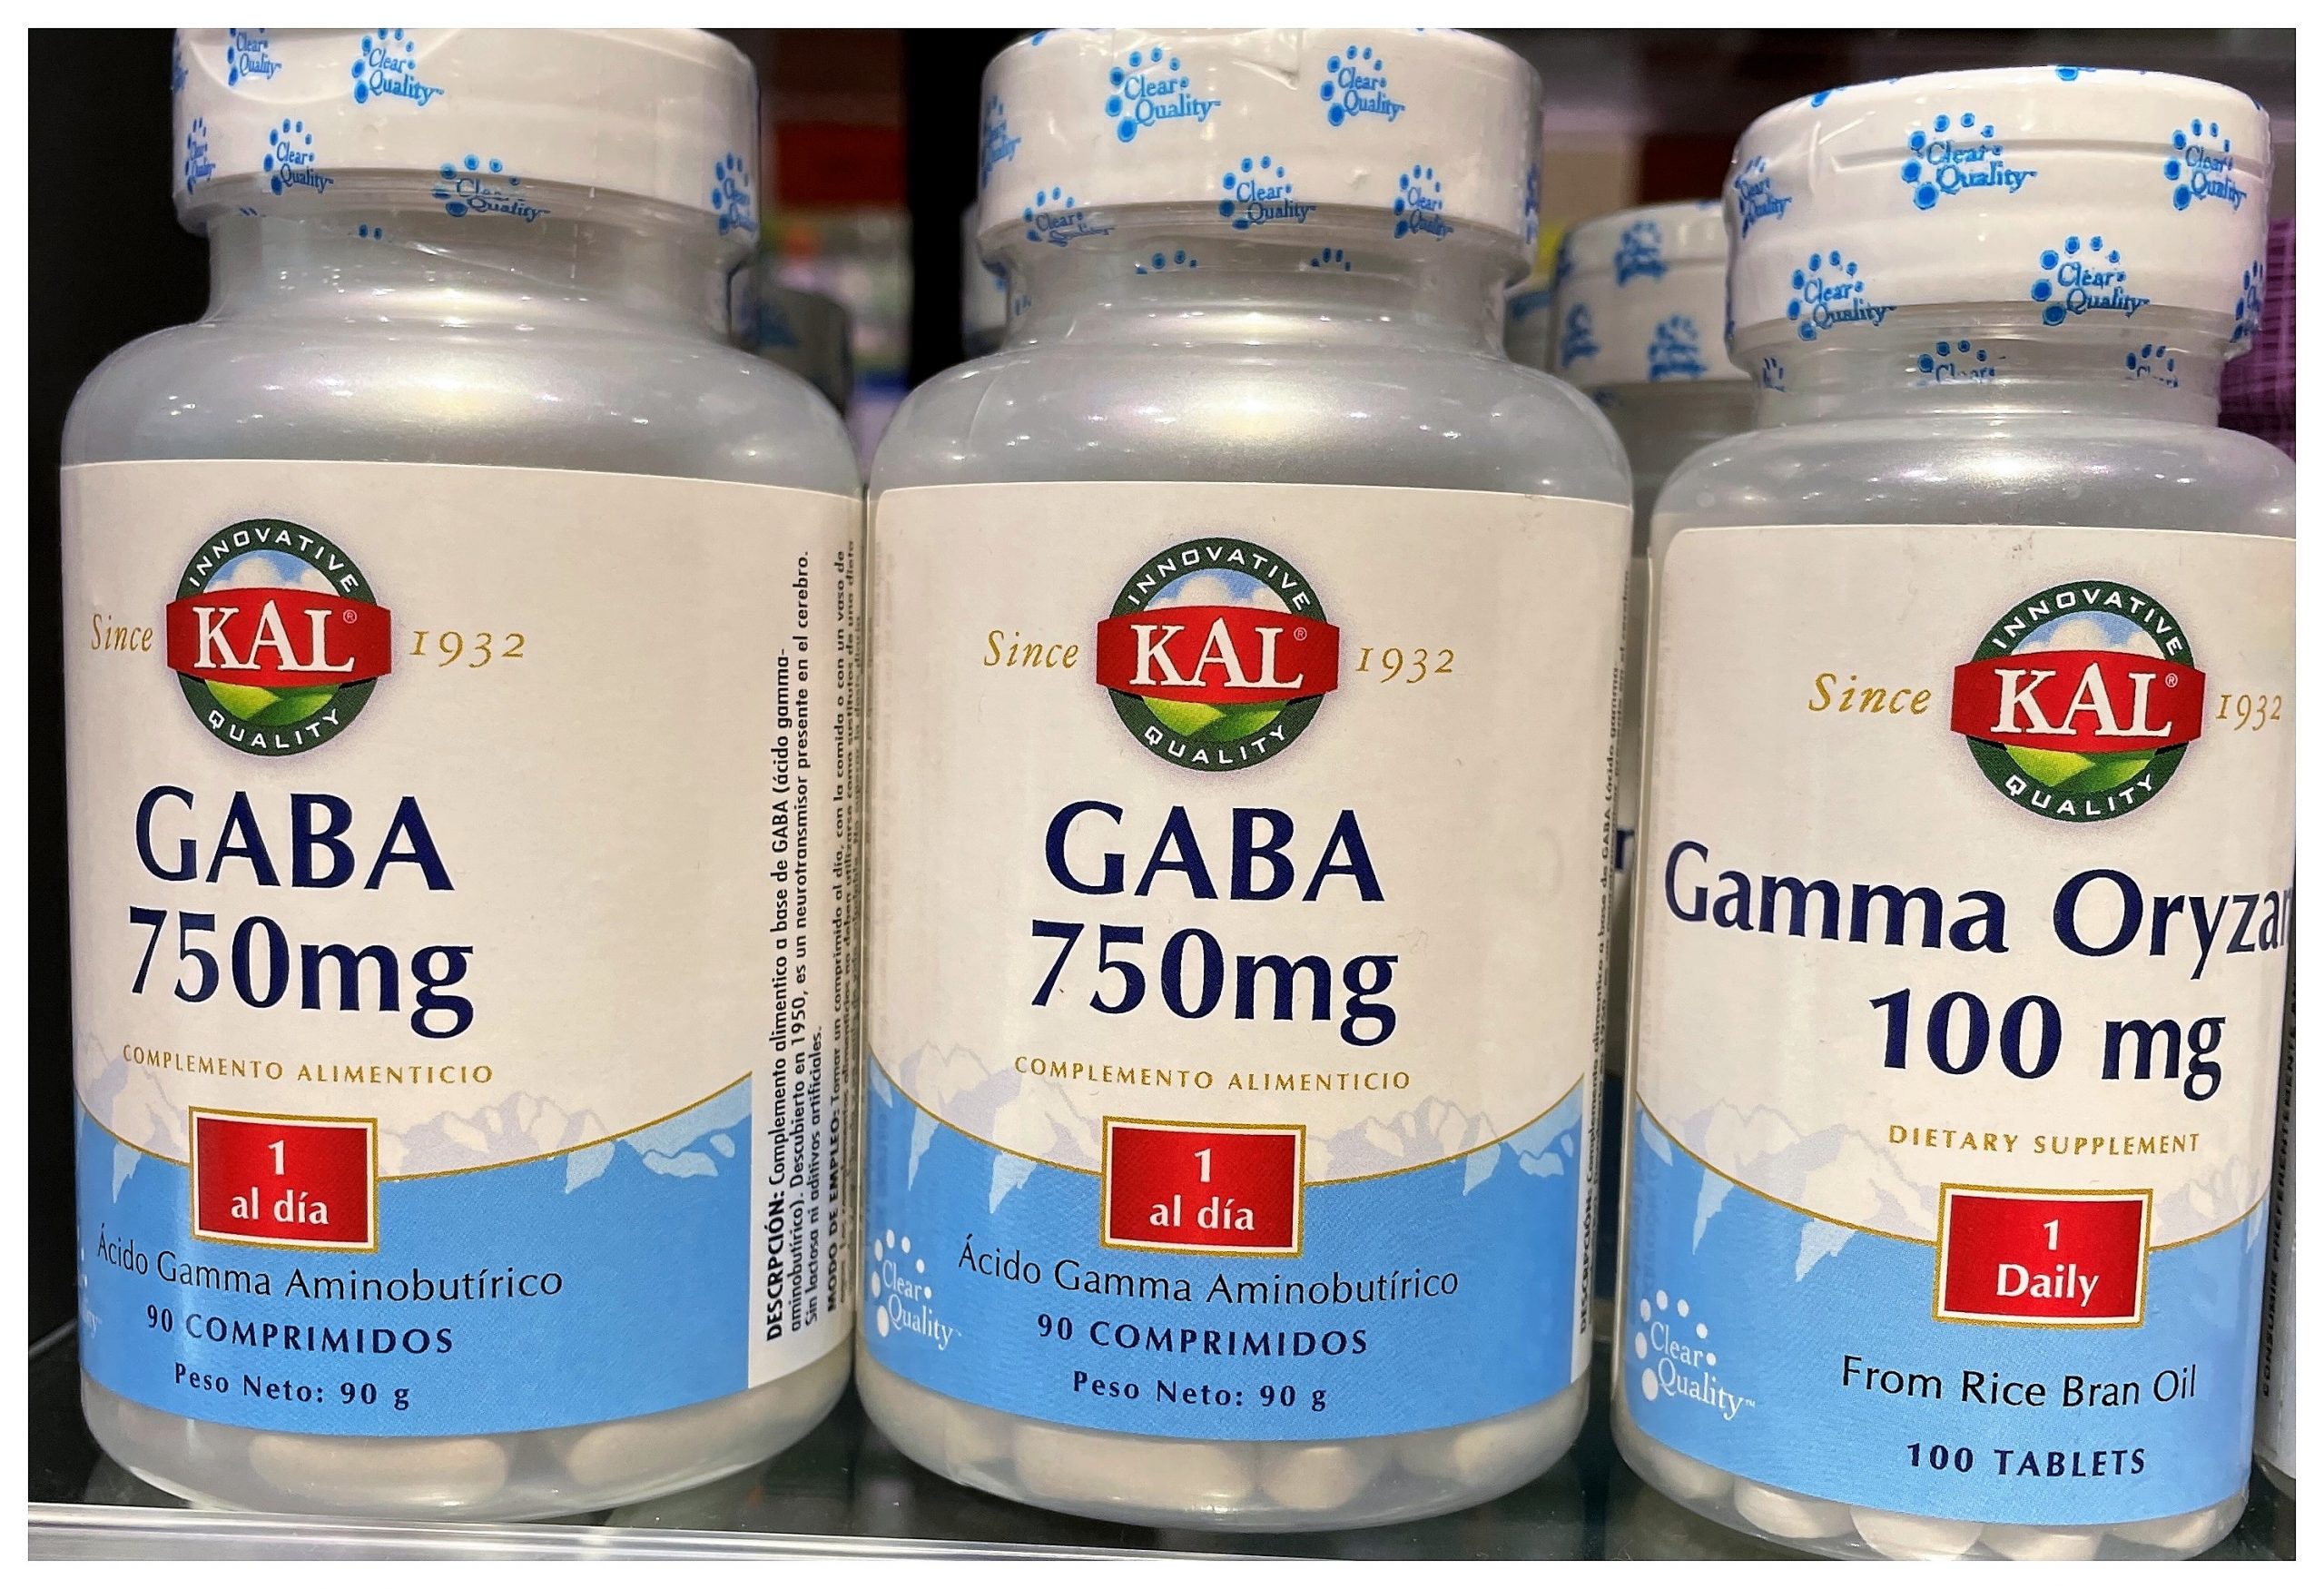 Gaba 750 mg de KAL para relajar, ayuda a superar la ansiedad. Aporta un aminoácido esencial para favorecer la relajación y combatir el insomnio y trastornos neurológicos y psiquiátricos. Ácido Gamma Amino Butírico (GABA).